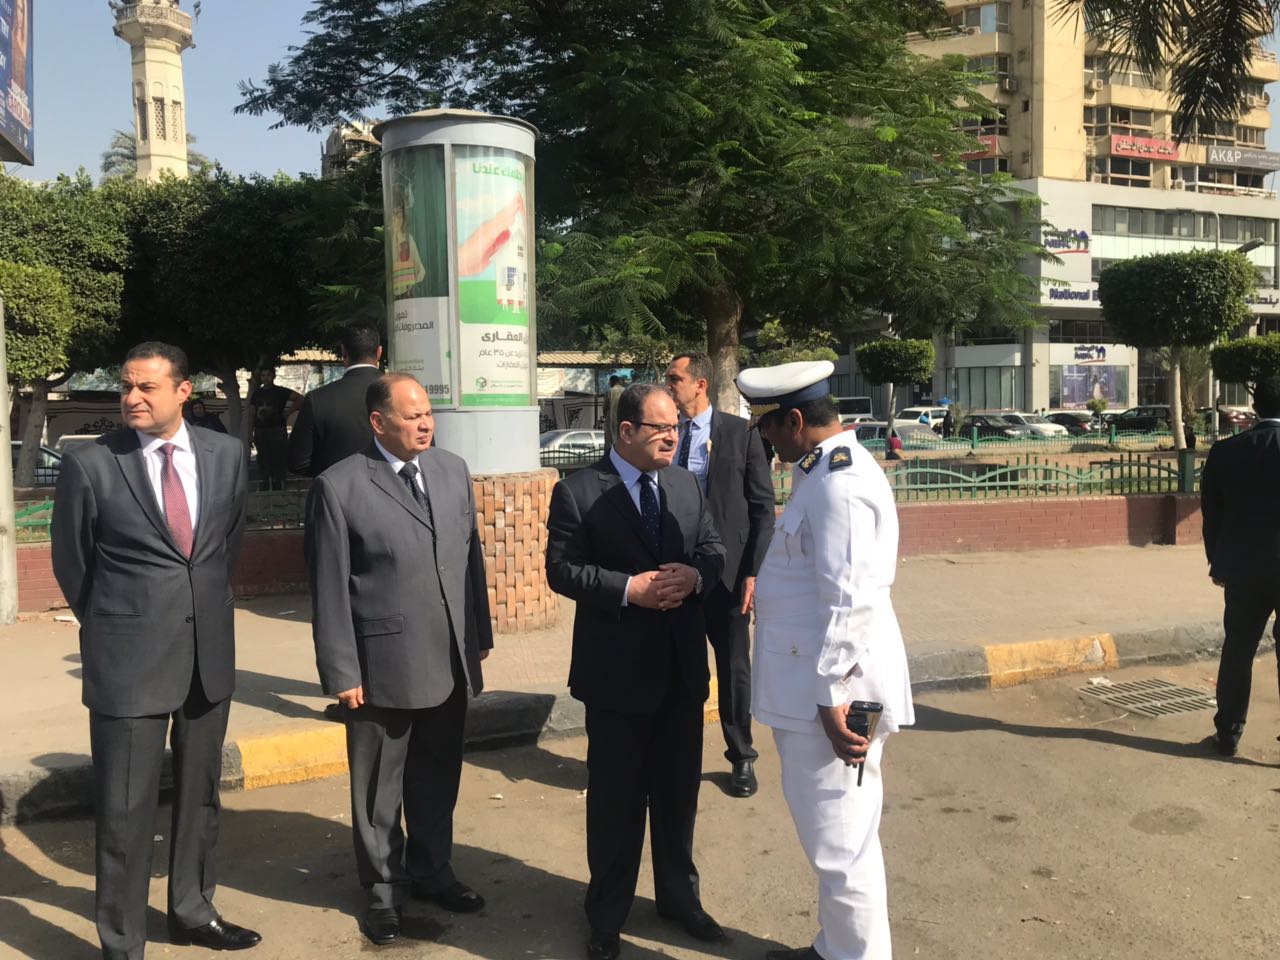   وزير الداخلية يتفقد الخدمات الأمنية بشوارع القاهرة والجيزة